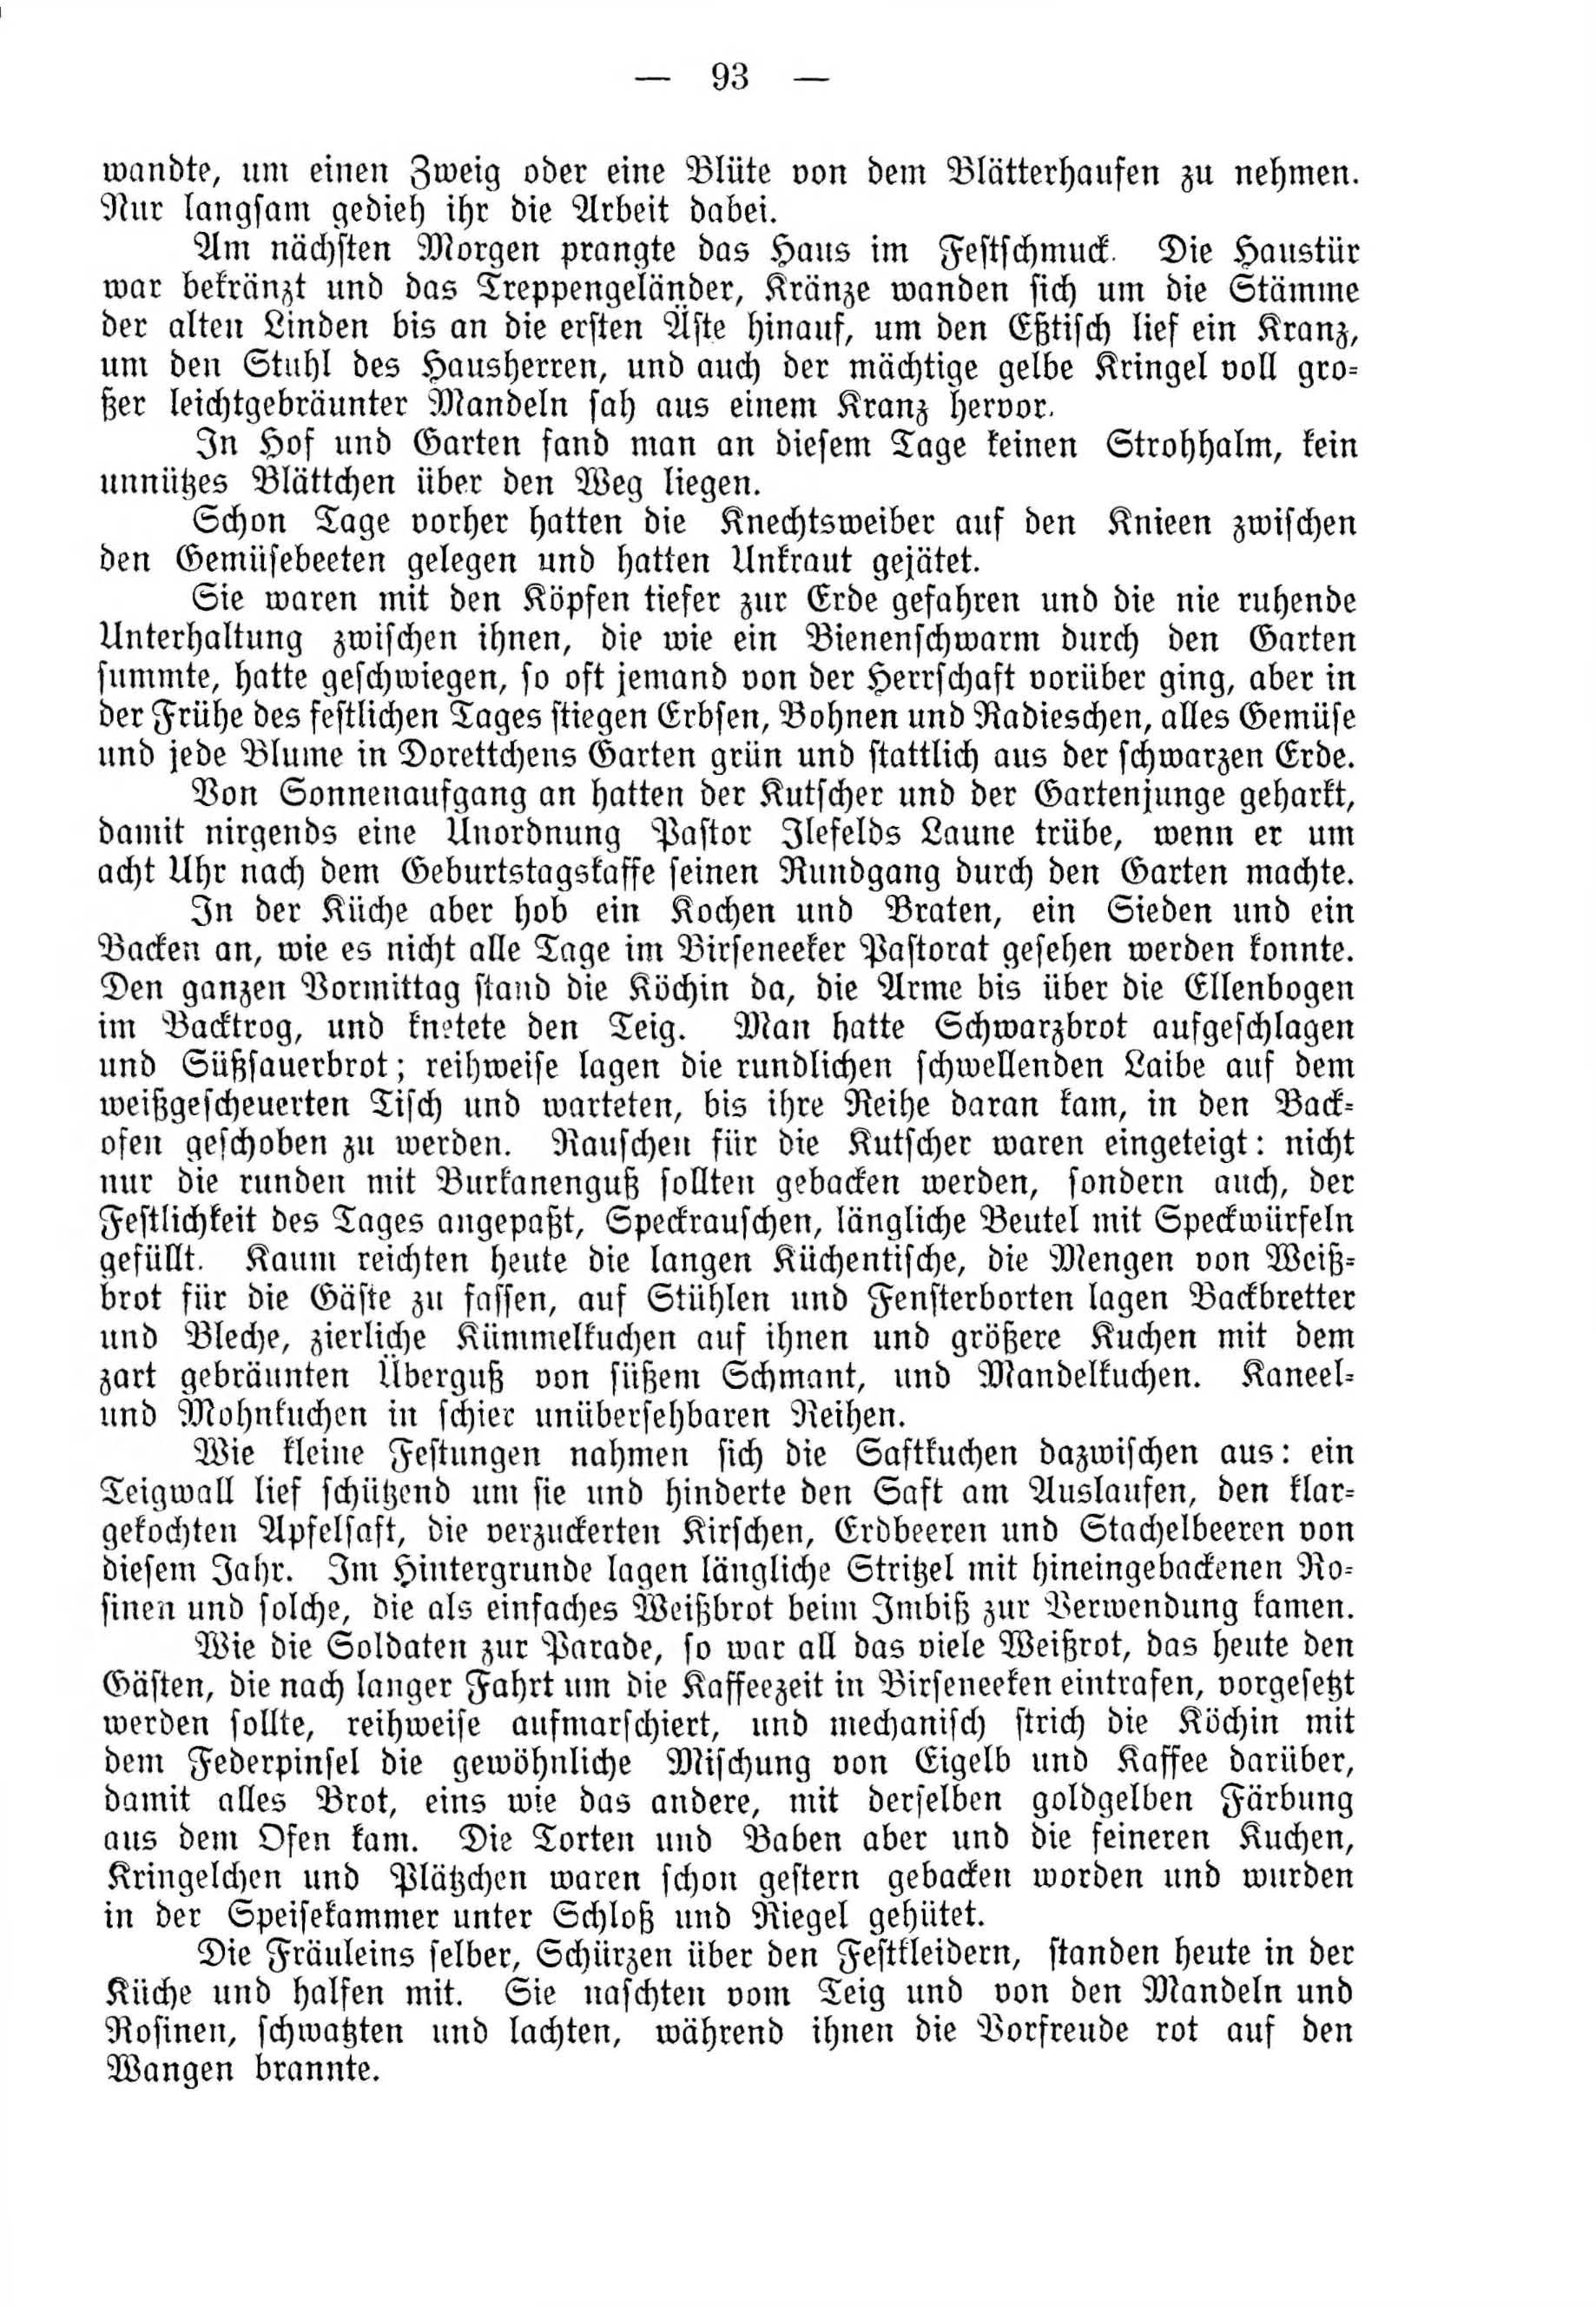 Deutsche Monatsschrift für Russland [4] (1915) | 93. (93) Main body of text